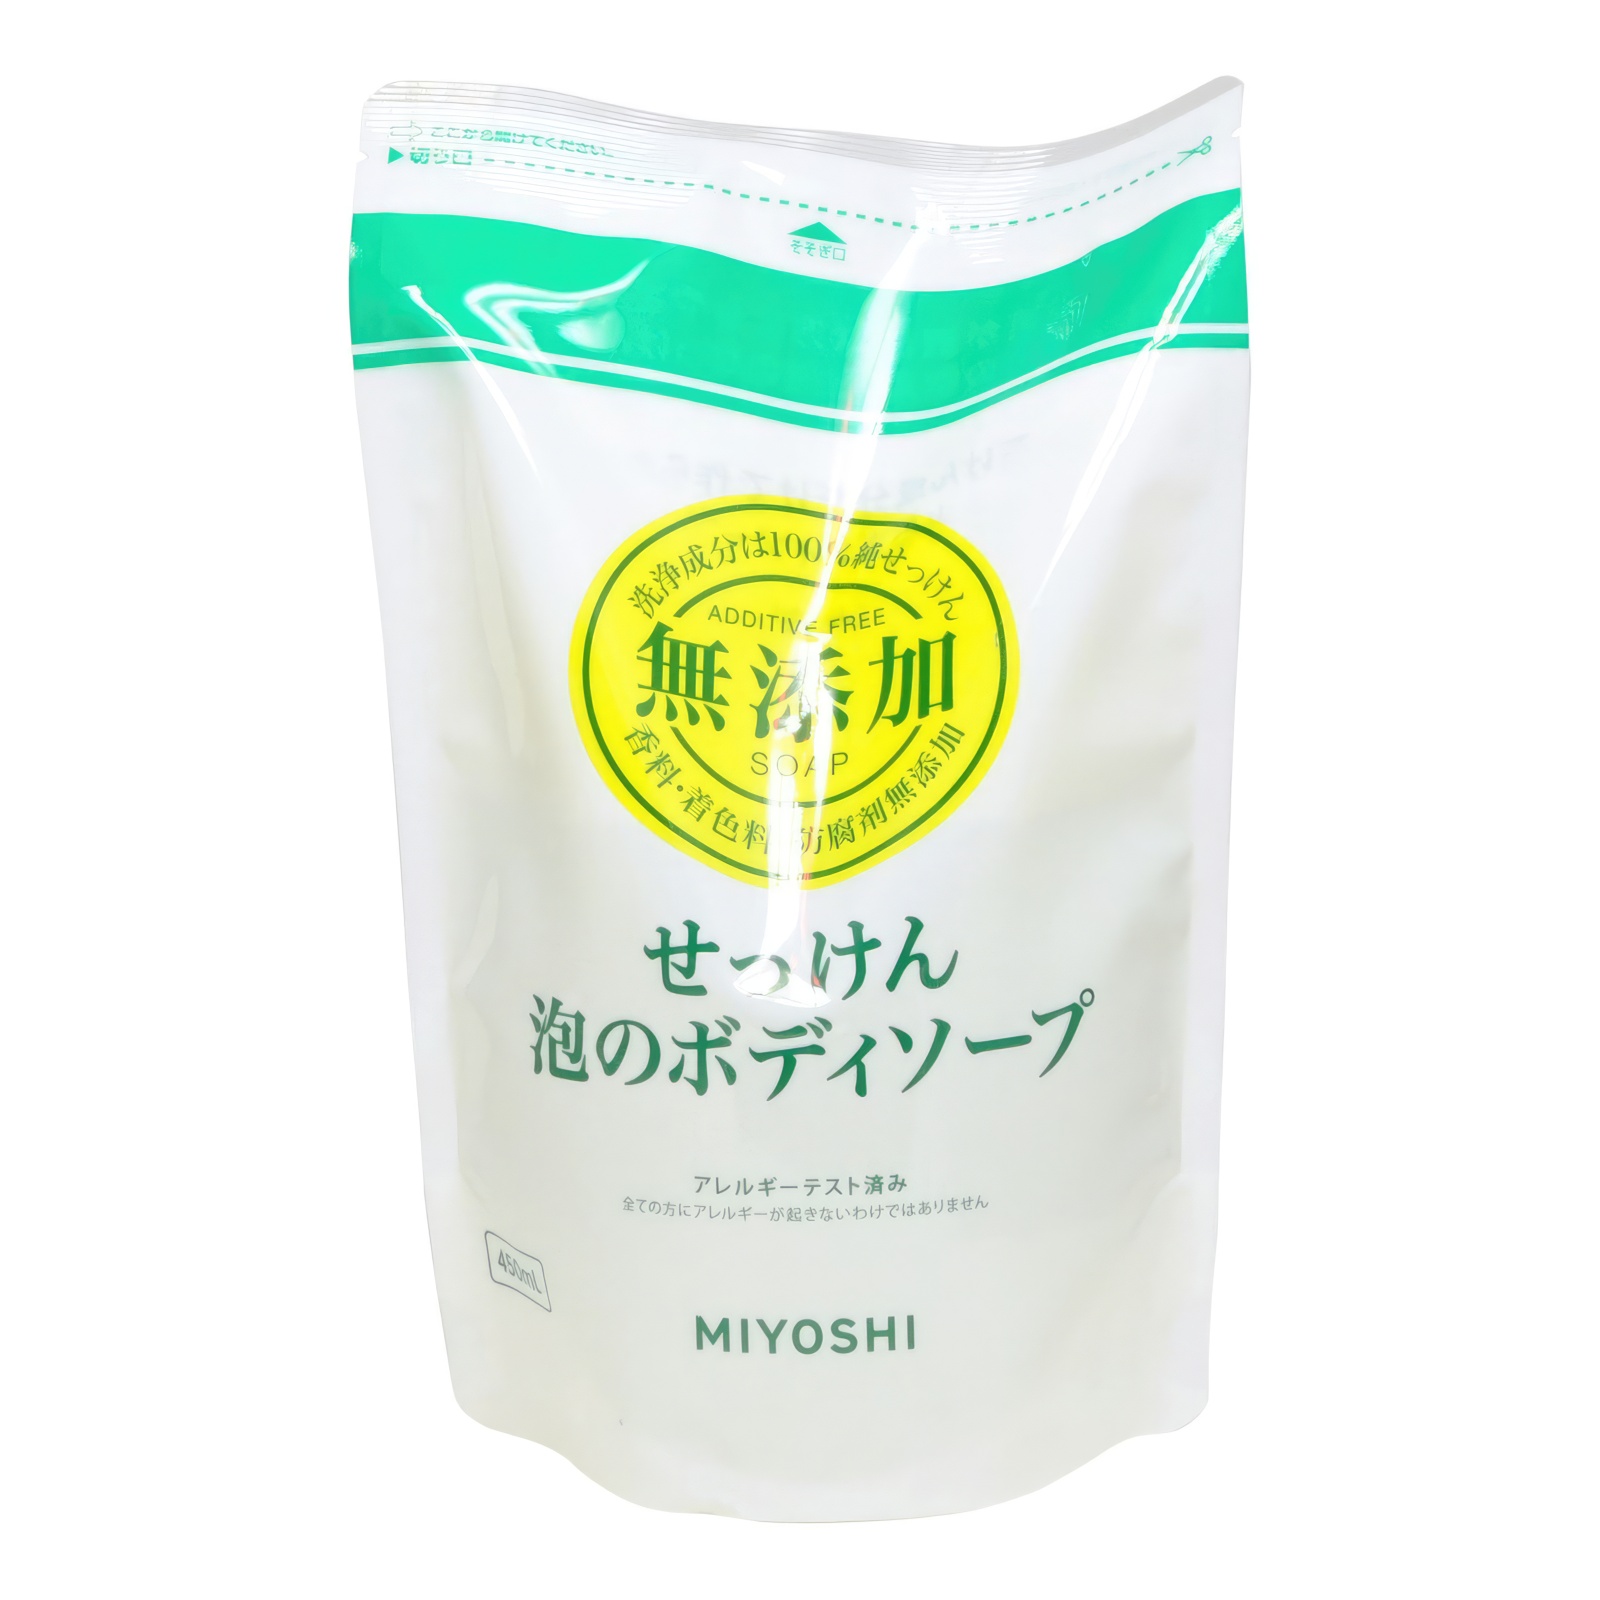 Натуральное пенящееся жидкое мыло MIYOSHI эко 450 мл з б удобрение органическое жидкое бочка и четыре ведра гумат калия в бутылках 600 мл